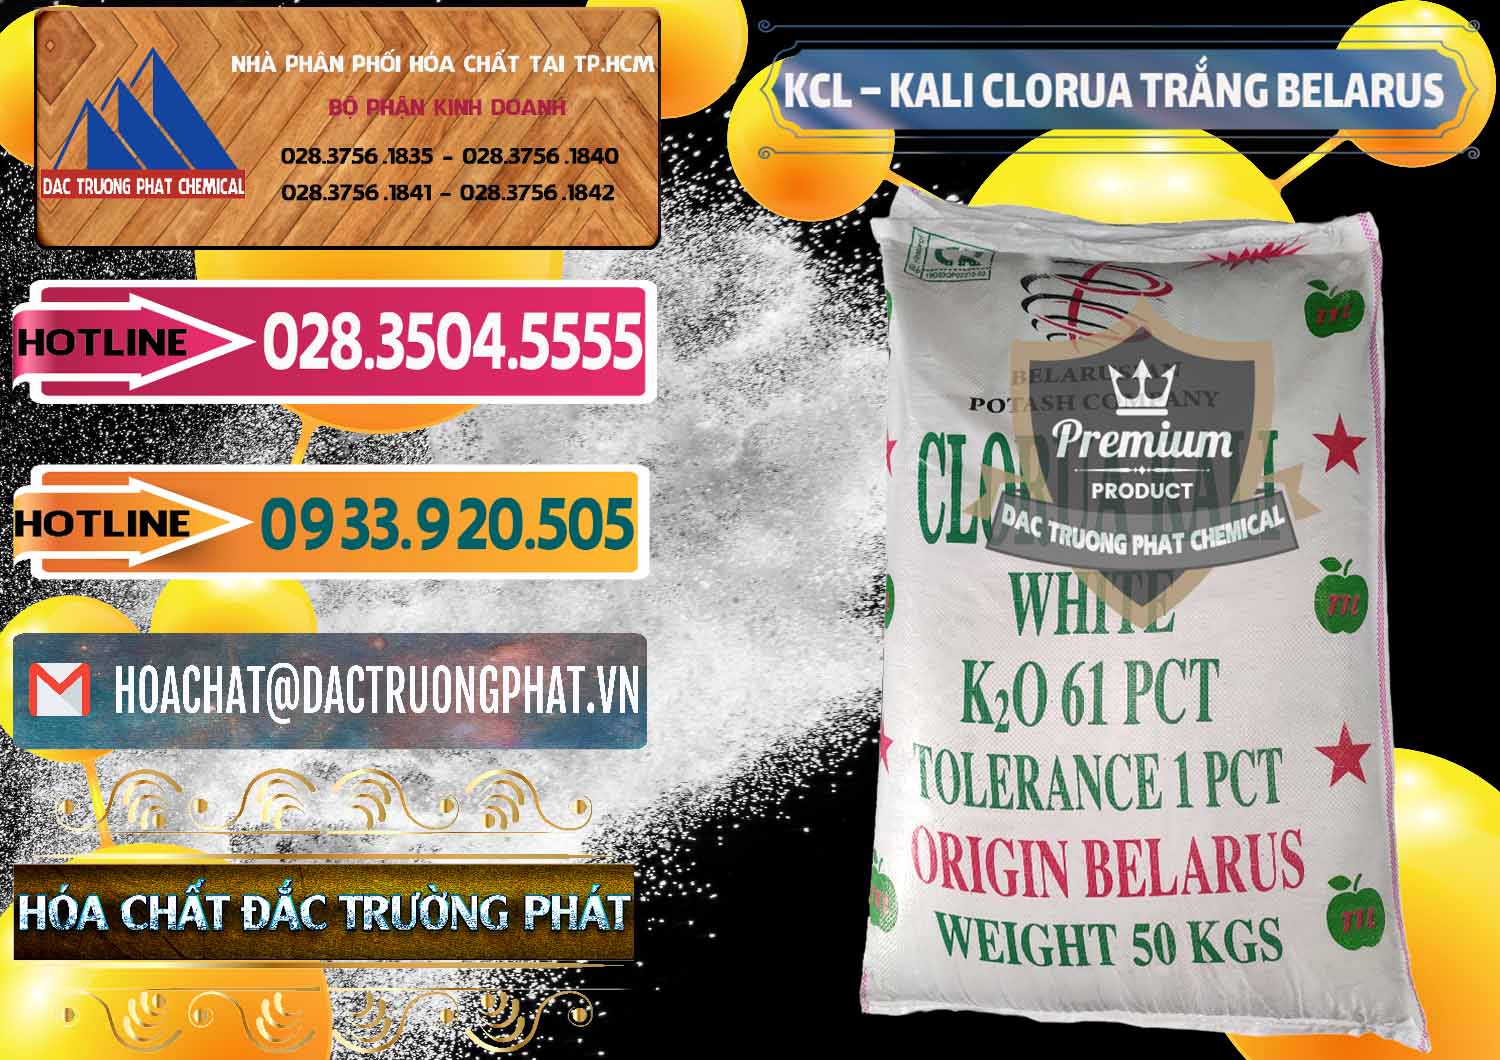 Chuyên cung ứng _ bán KCL – Kali Clorua Trắng Belarus - 0085 - Đơn vị cung cấp _ phân phối hóa chất tại TP.HCM - dactruongphat.vn